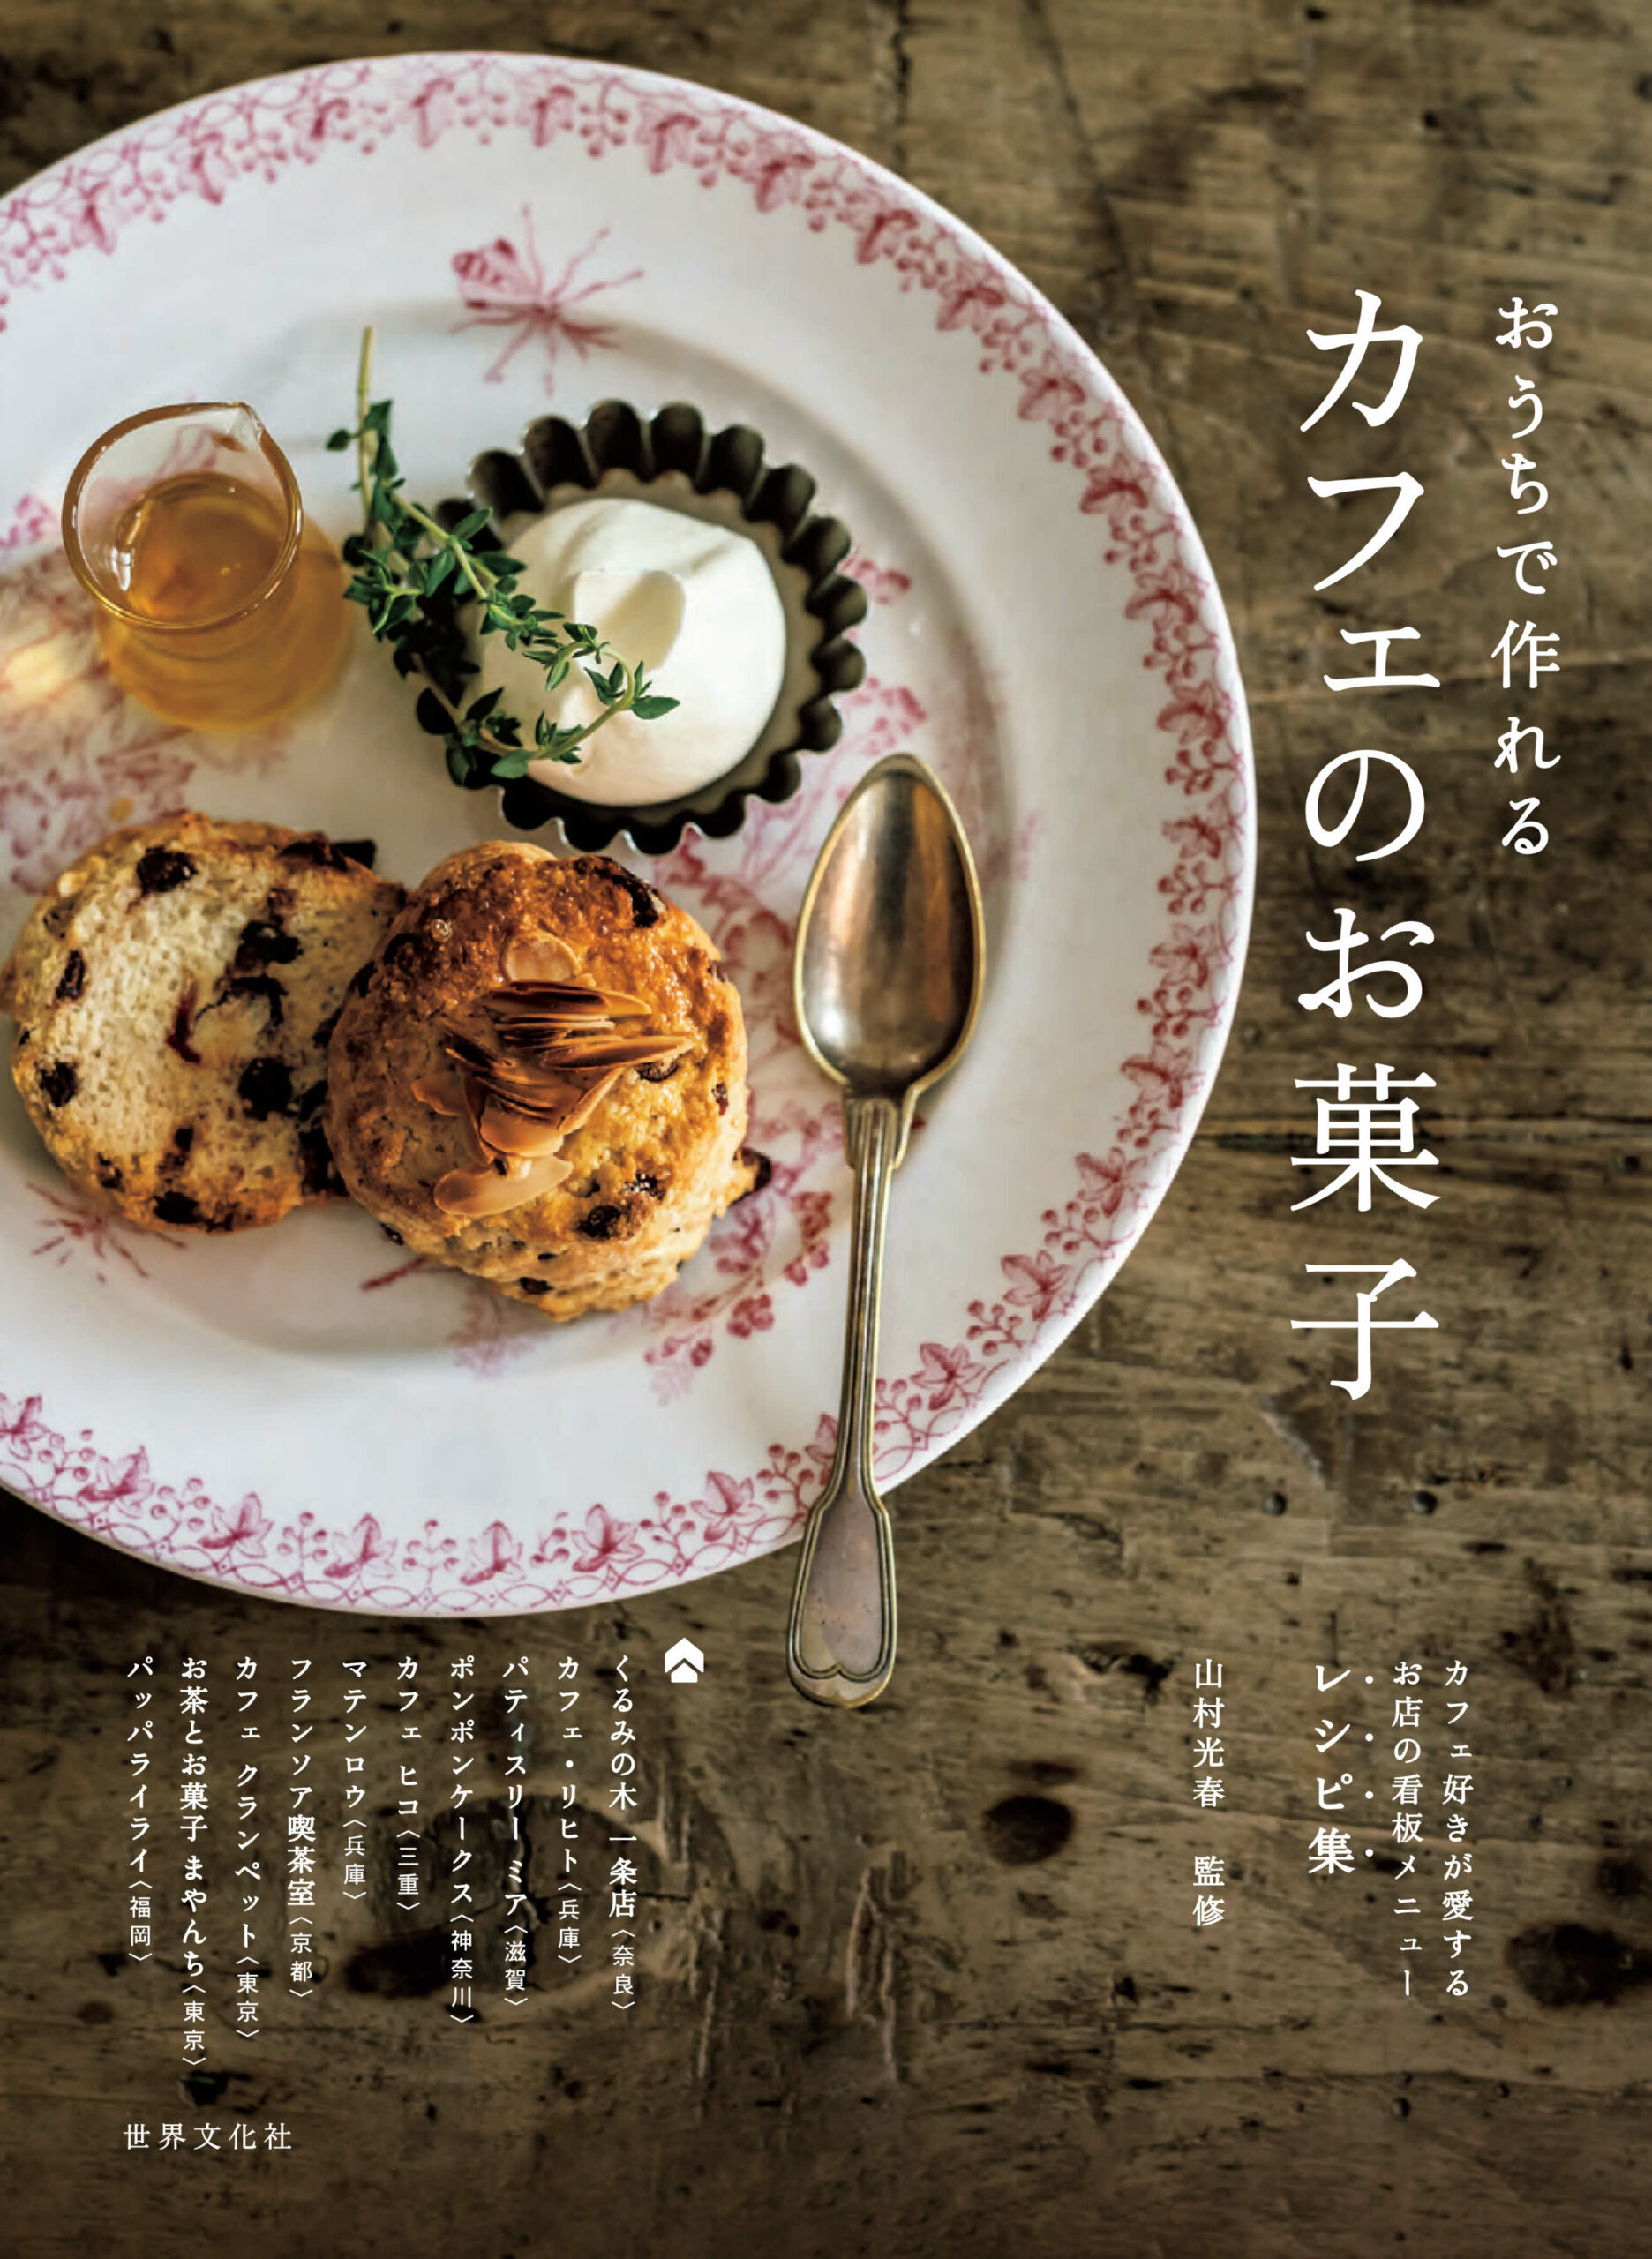 人気カフェのスイーツレシピ集「おうちで作れるカフェのお菓子」（世界文化社）が11月12日に発売される。価格は税込み1870円。